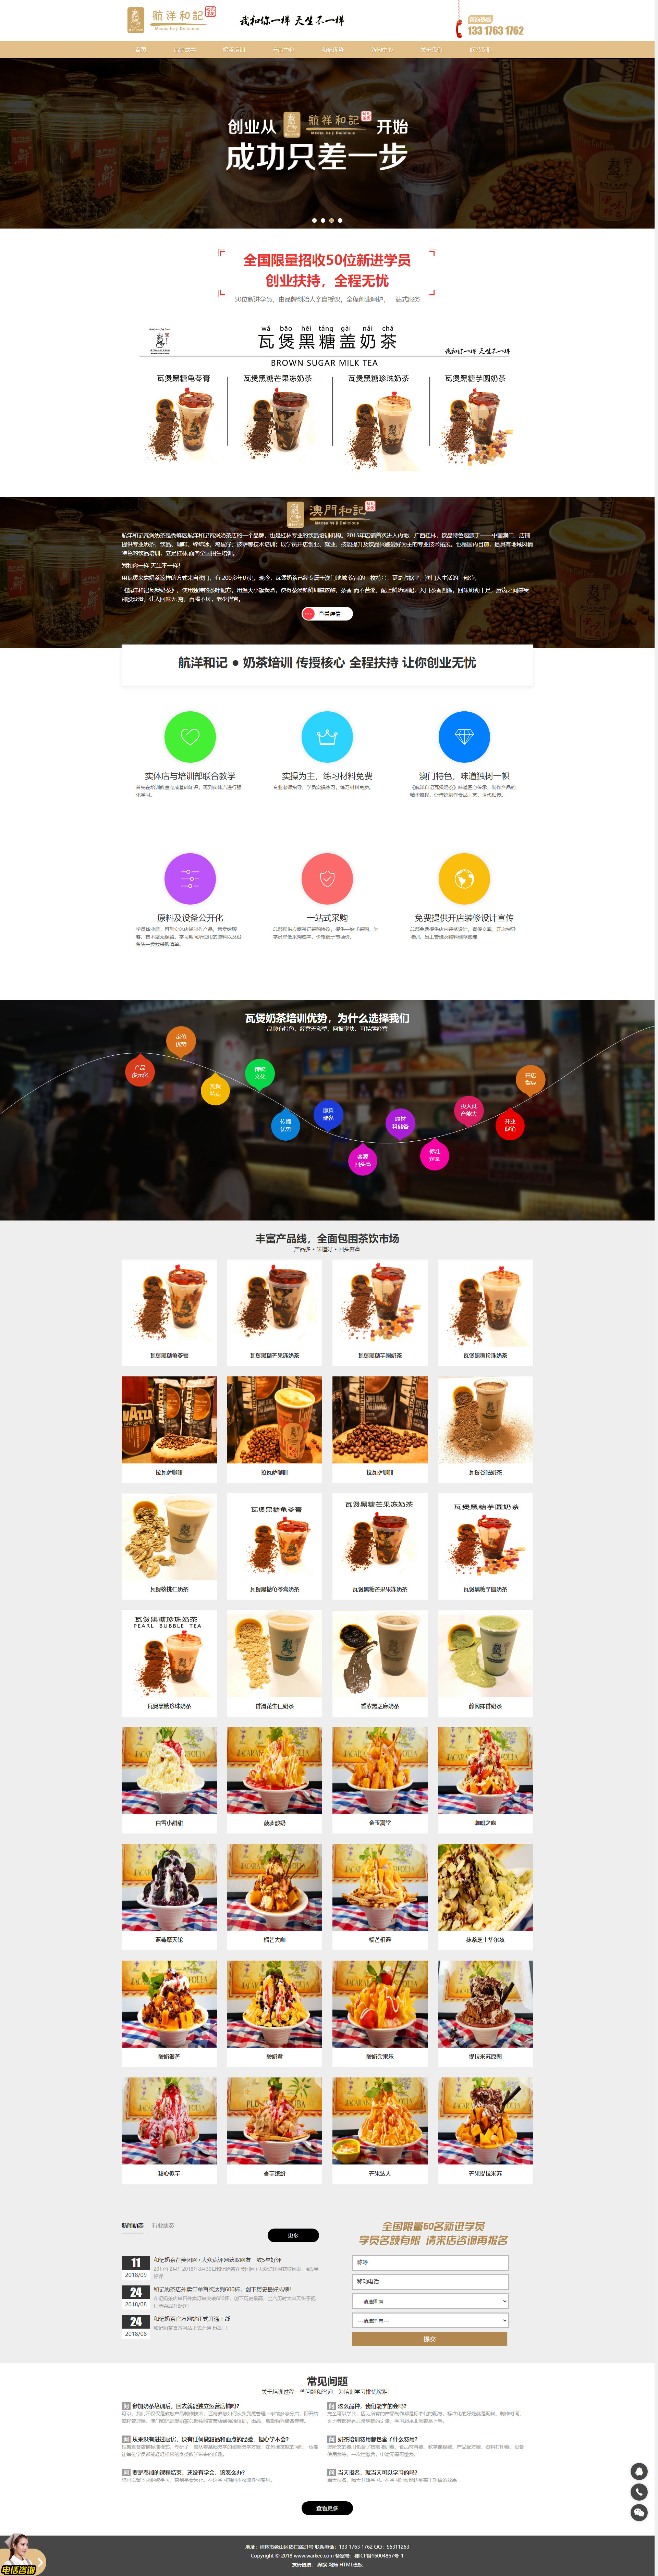 奶茶店品牌加盟原创设计PSD及整站源码